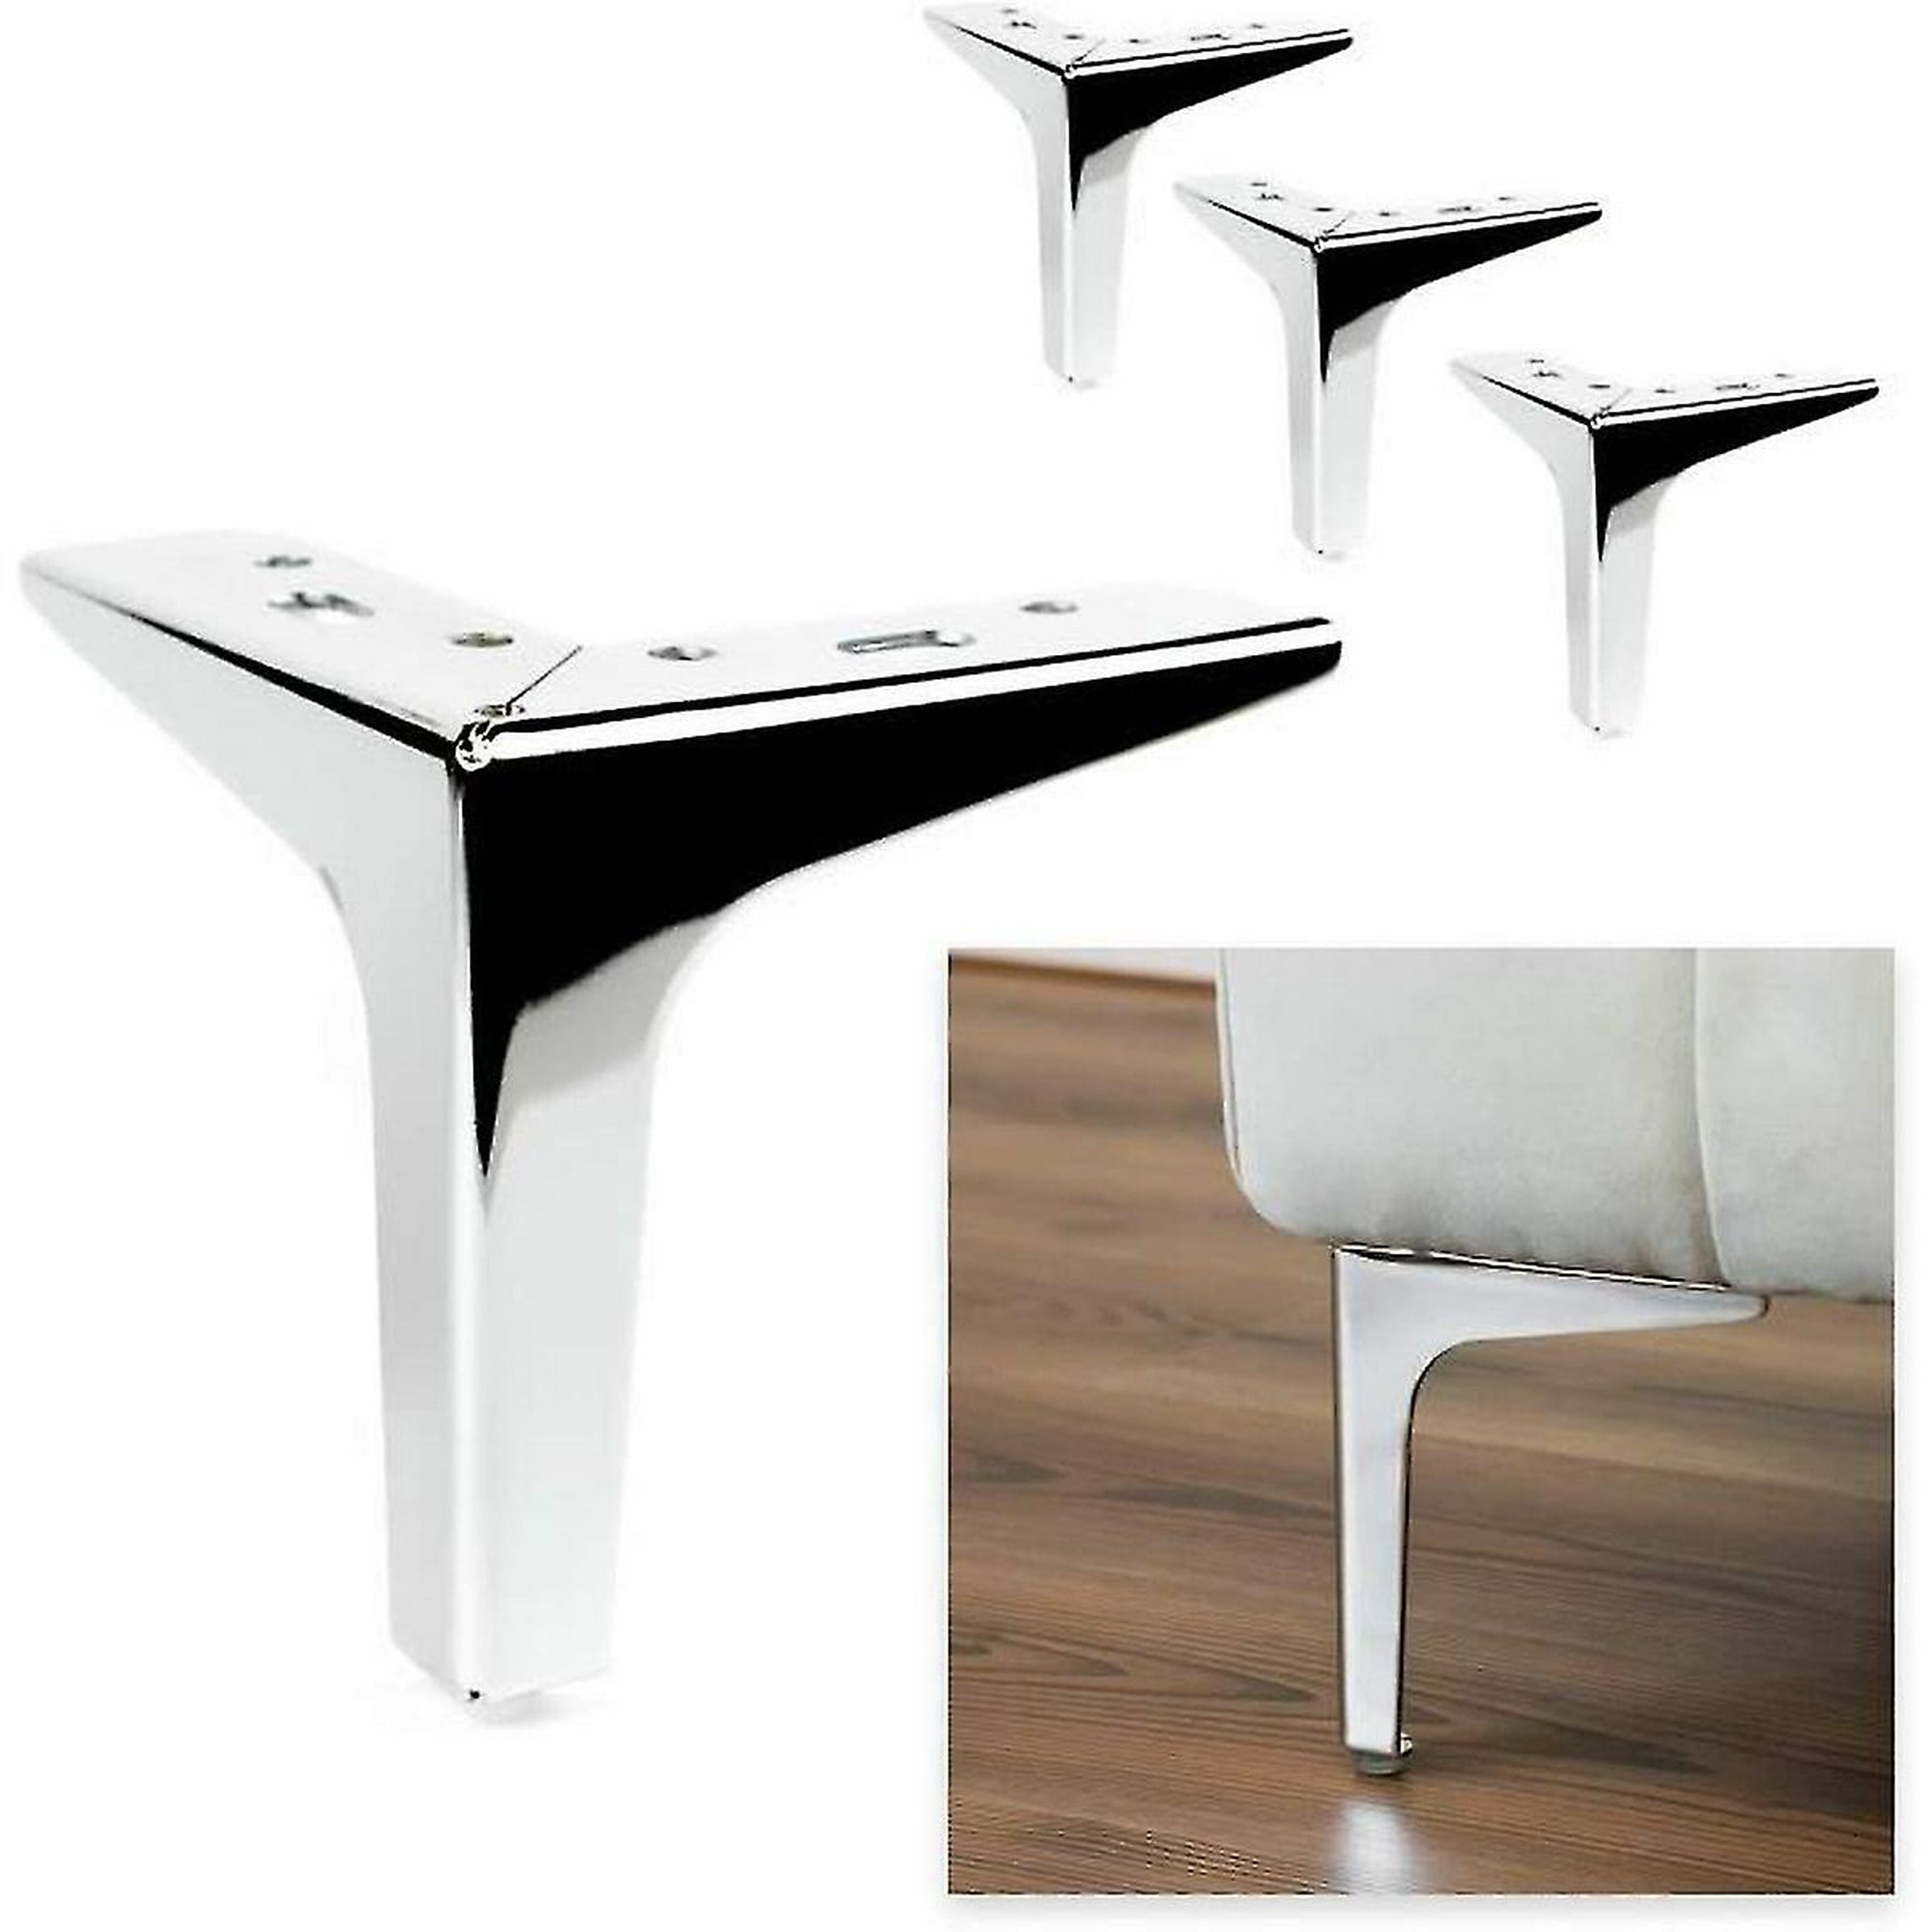 OwnMy 4 patas de metal para muebles, modernas para sofá, silla, mesa,  gabinete, patas para muebles de bricolaje, patas de esquina de repuesto